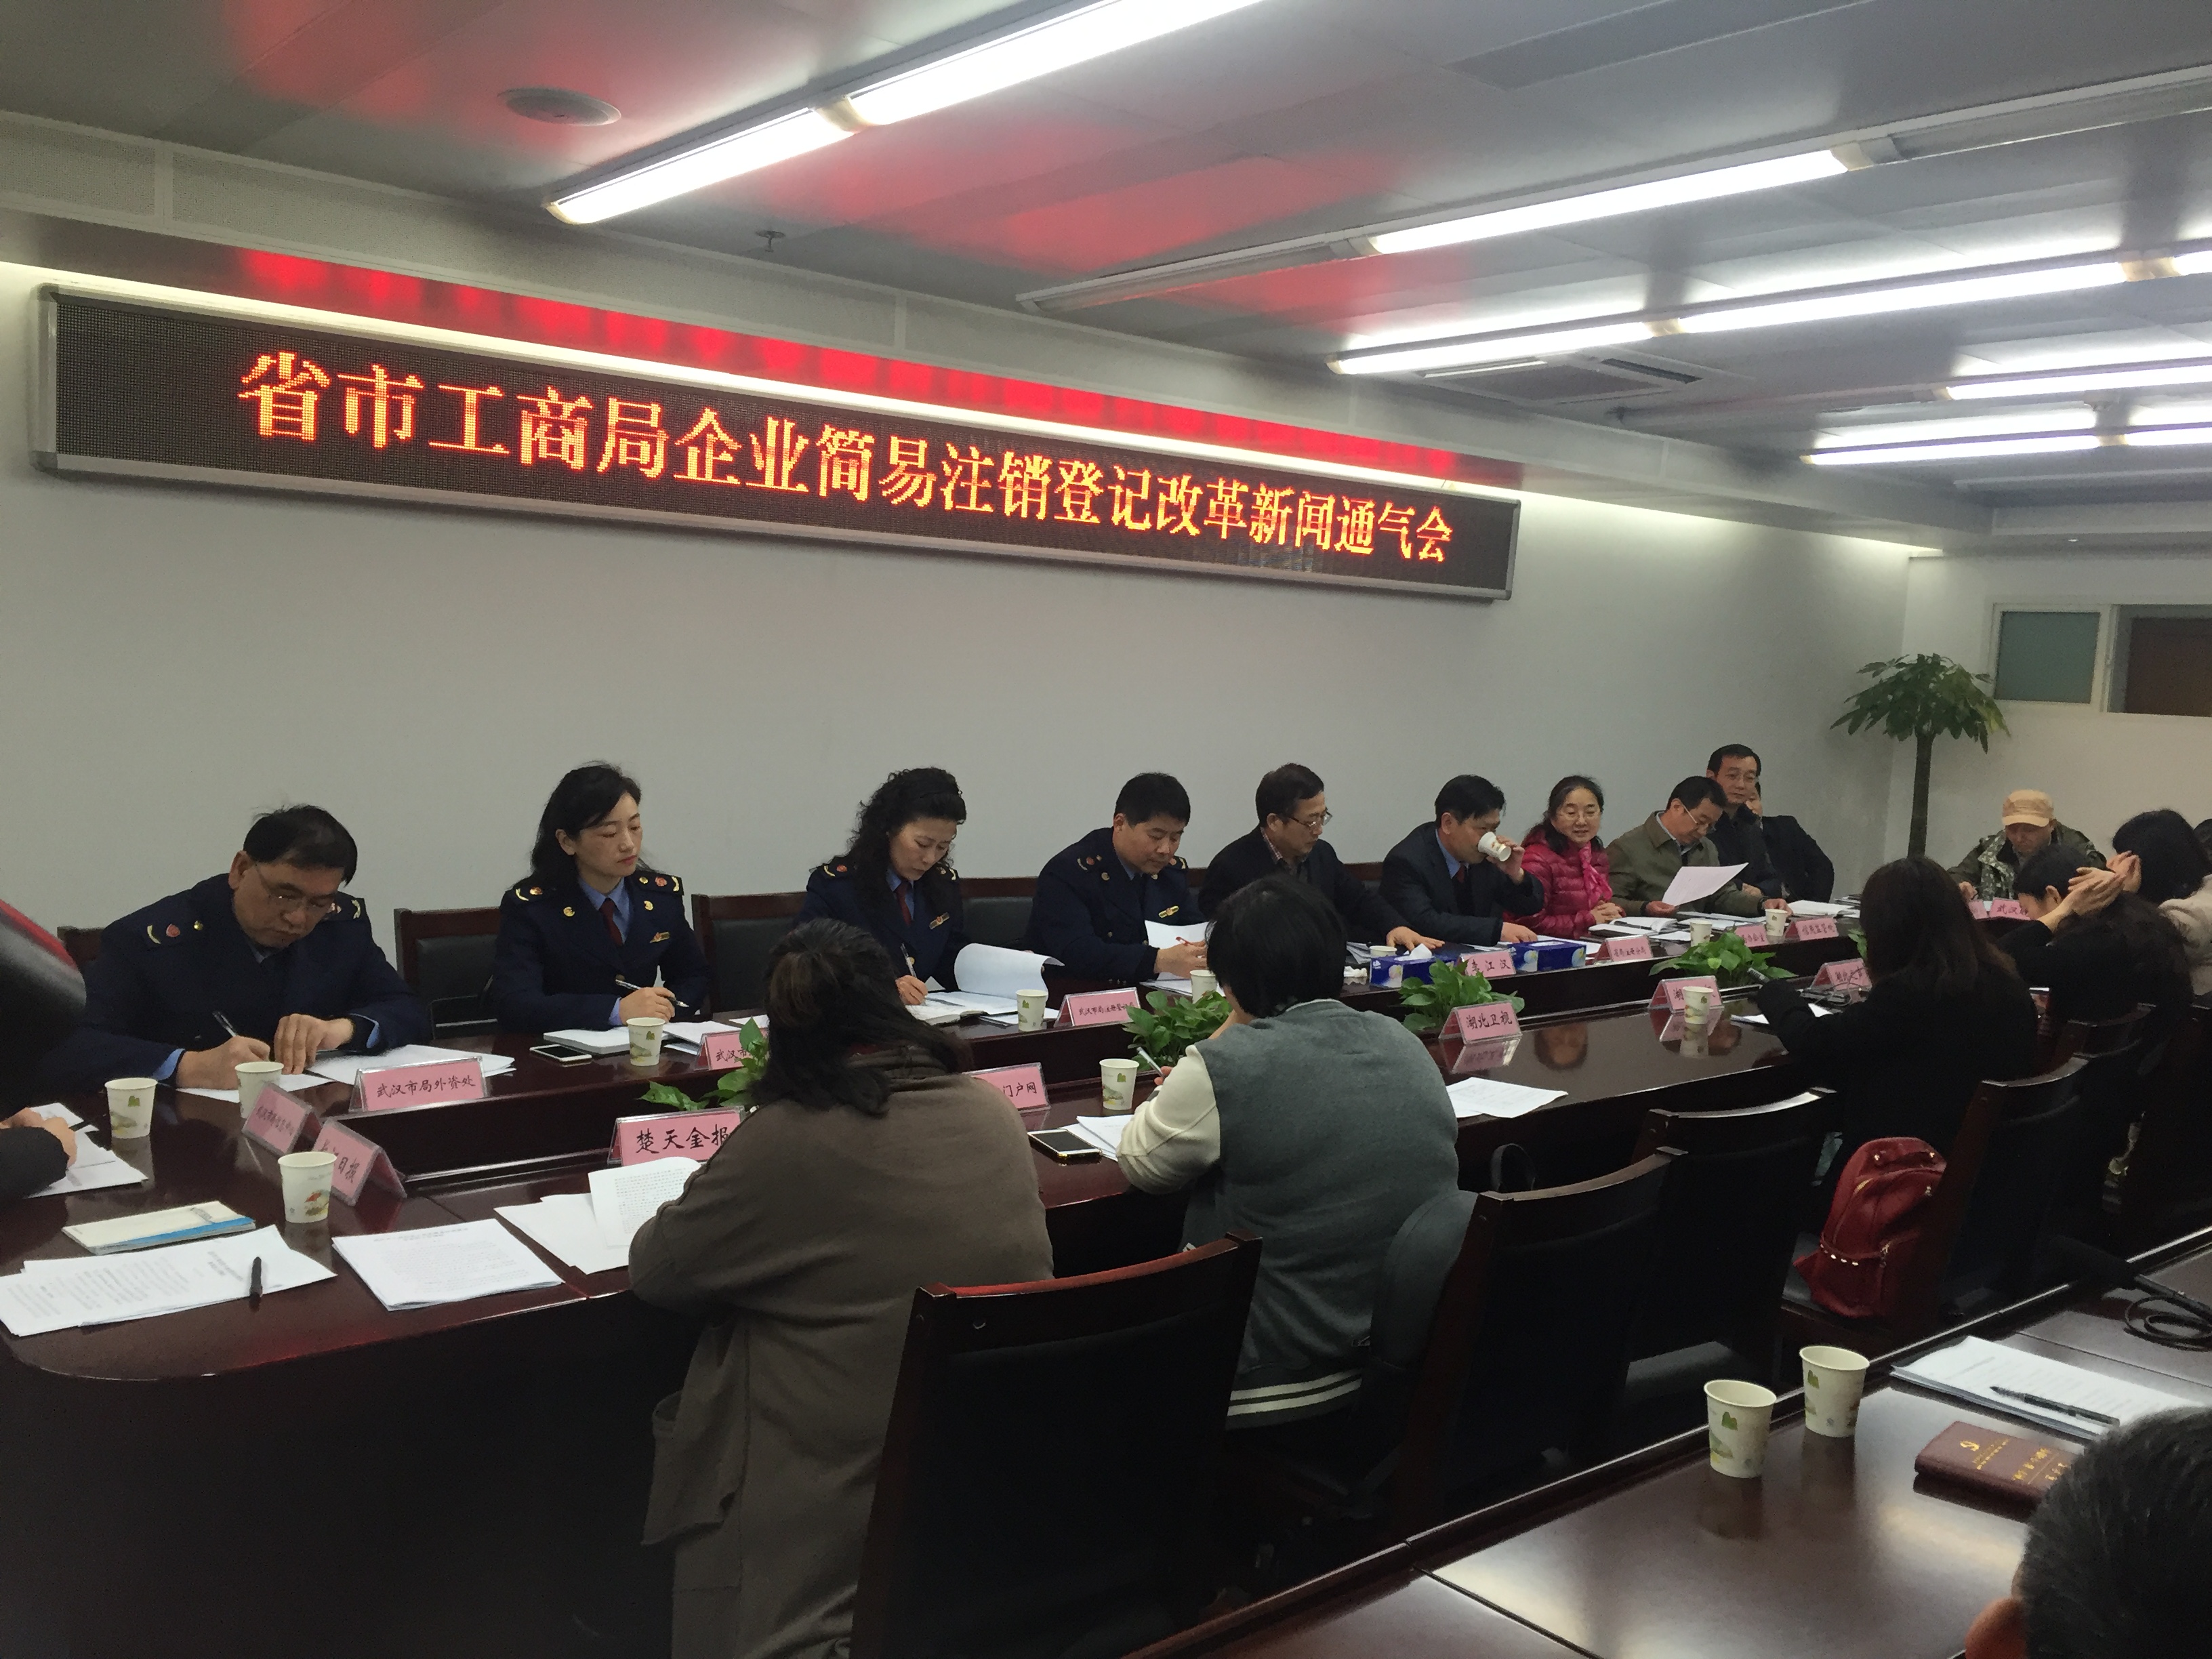 3月1日起,湖北省全面实施企业简易注销登记改